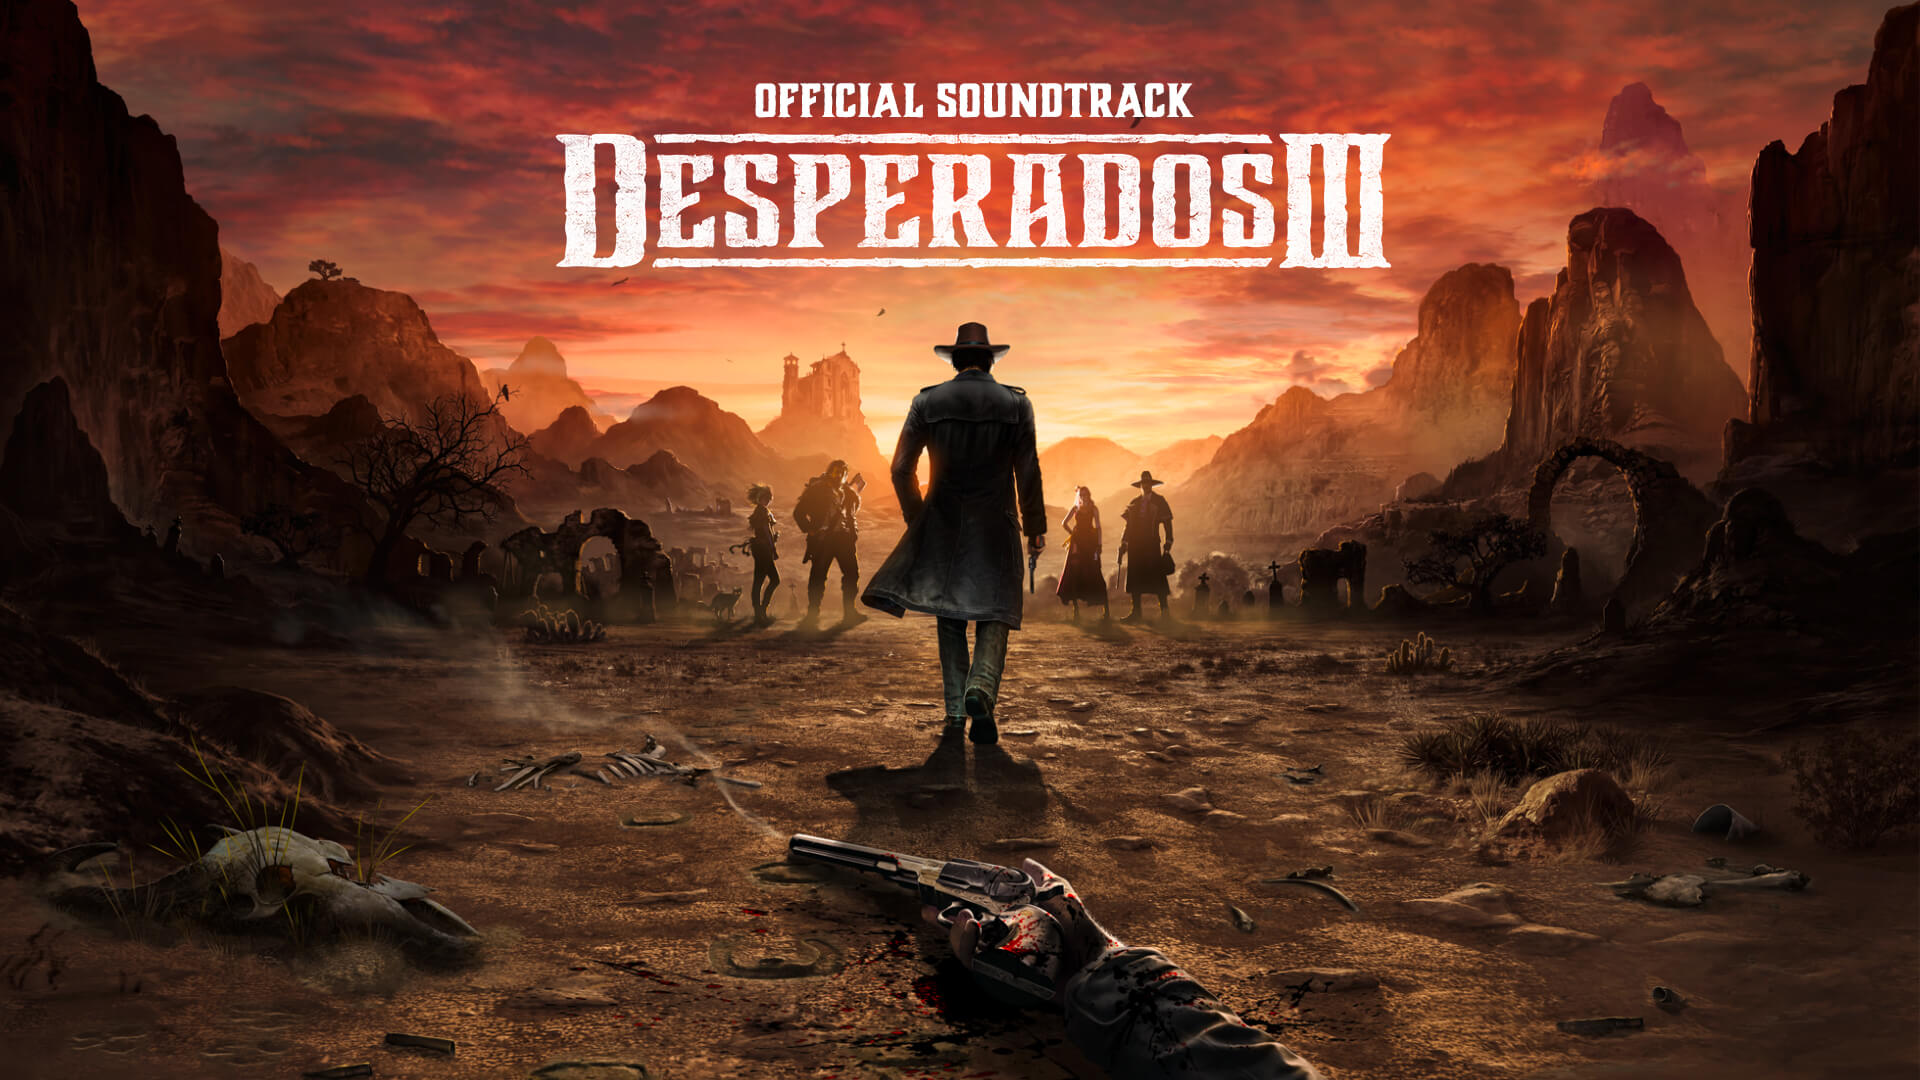 (4.51$) Desperados III - Soundtrack DLC Steam CD Key